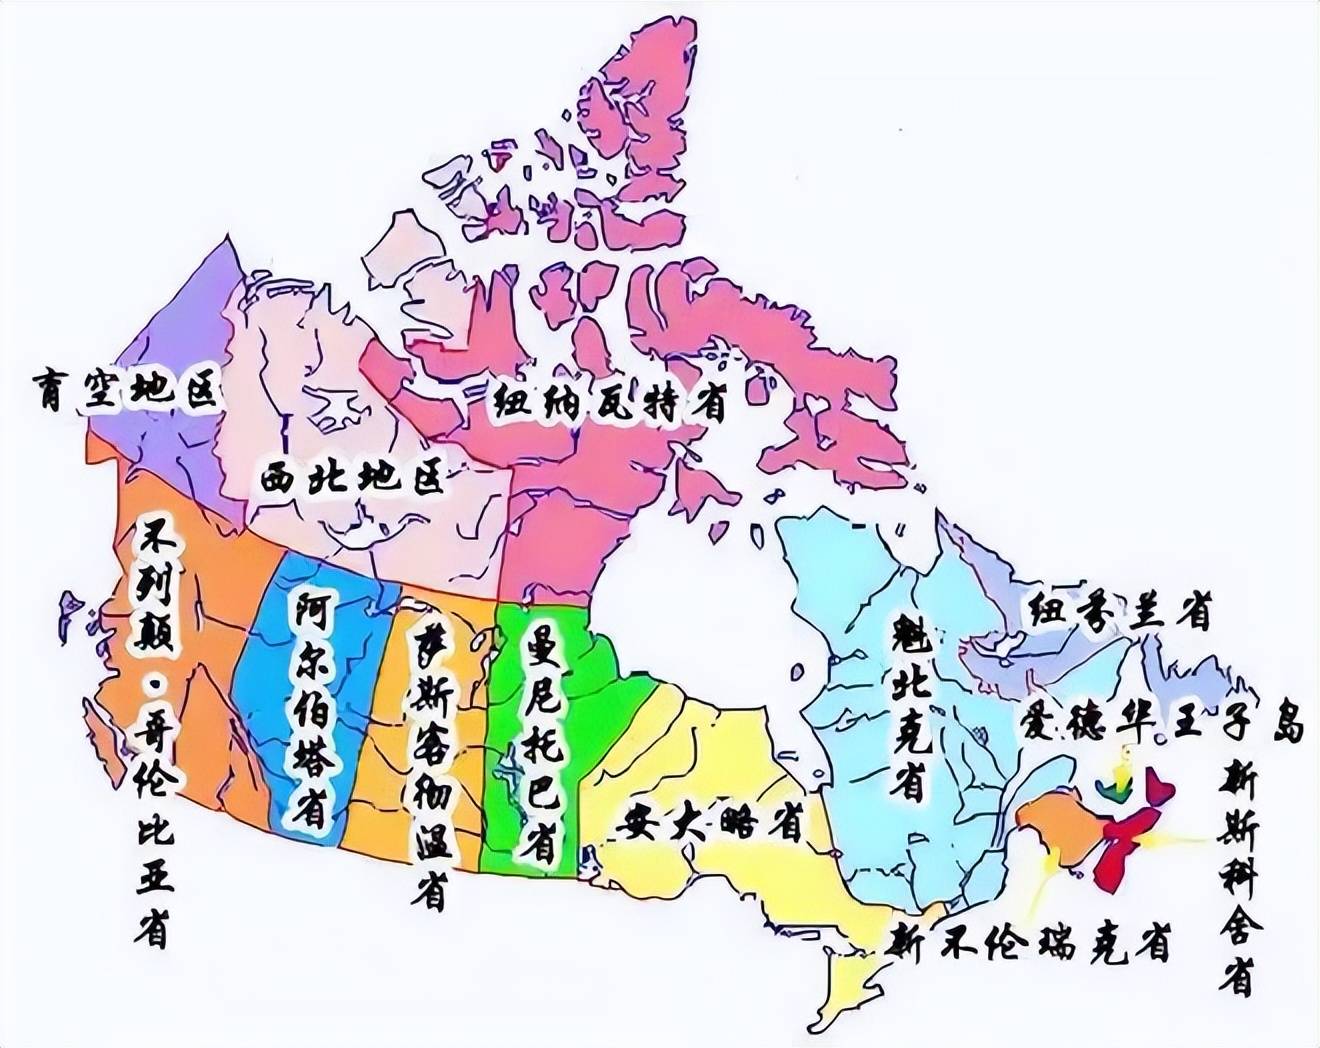 加拿大的国土面积比中国大,为什么人口只3000万?